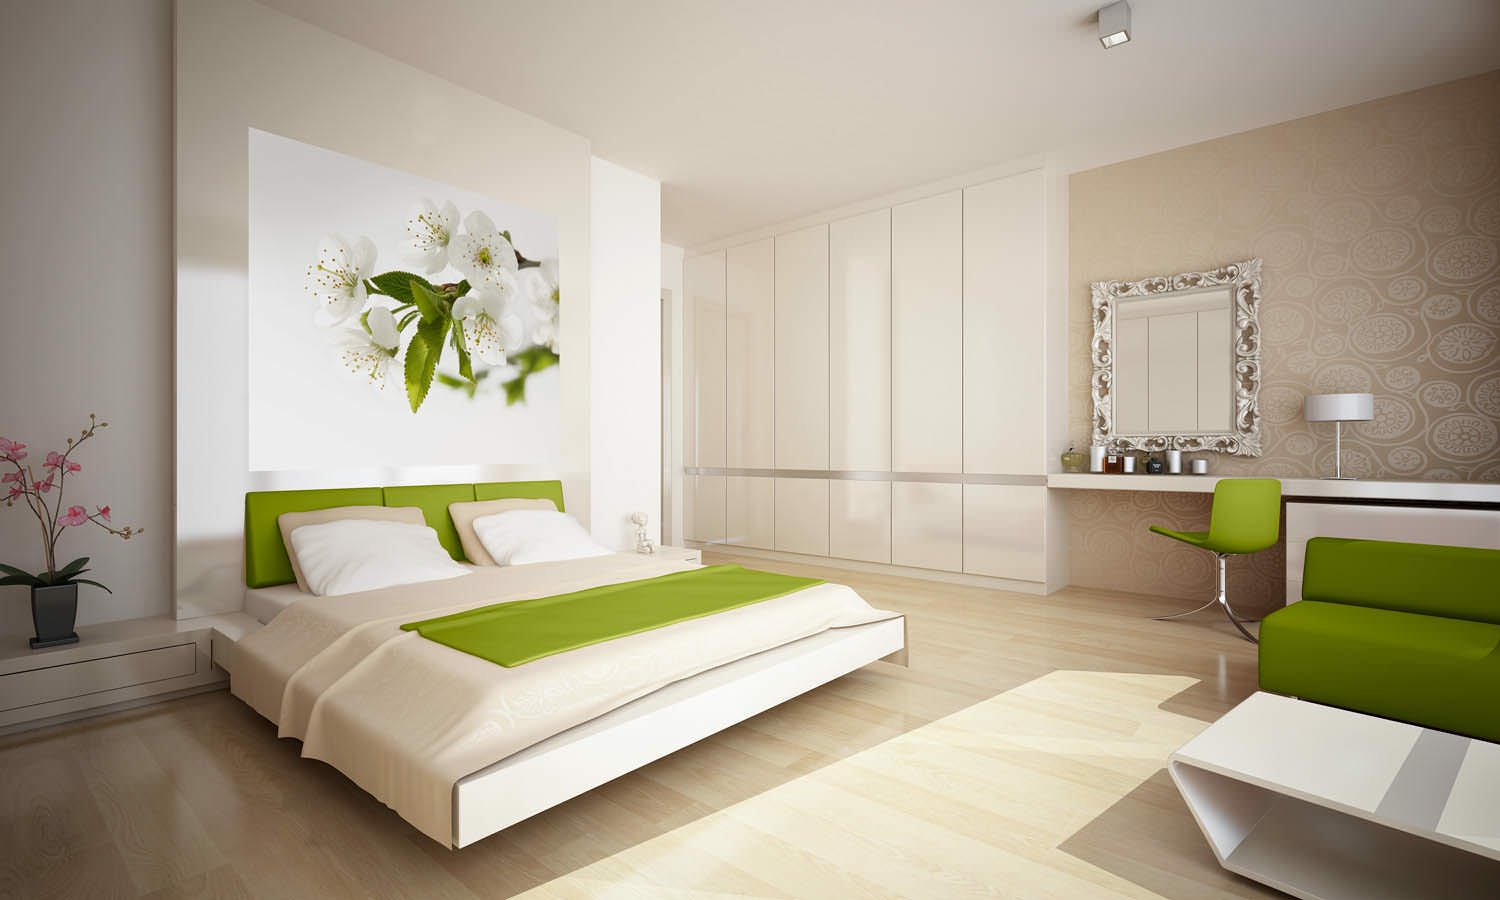 ภาพถ่ายการออกแบบห้องนอนสีเขียว